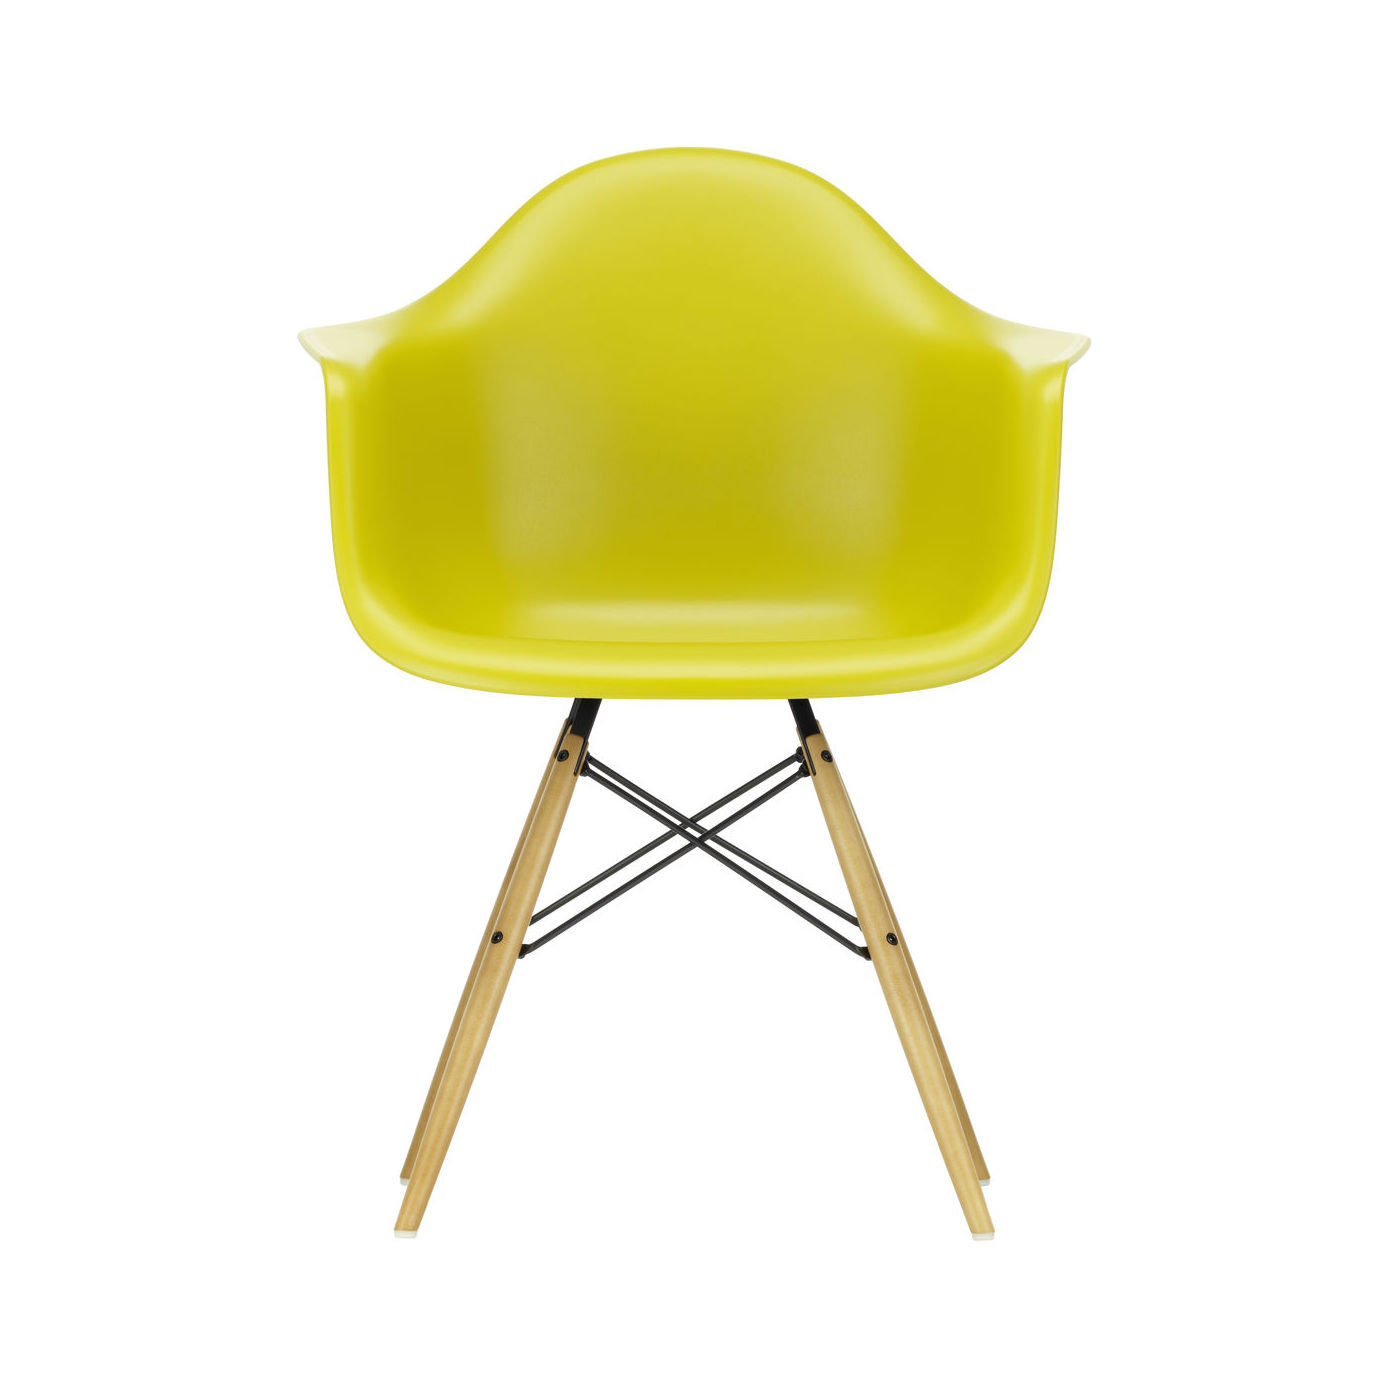 Chaise DAW - Eames Plastic Armchair / (1950) - Pieds bois clair - Vitra jaune en matière plastique